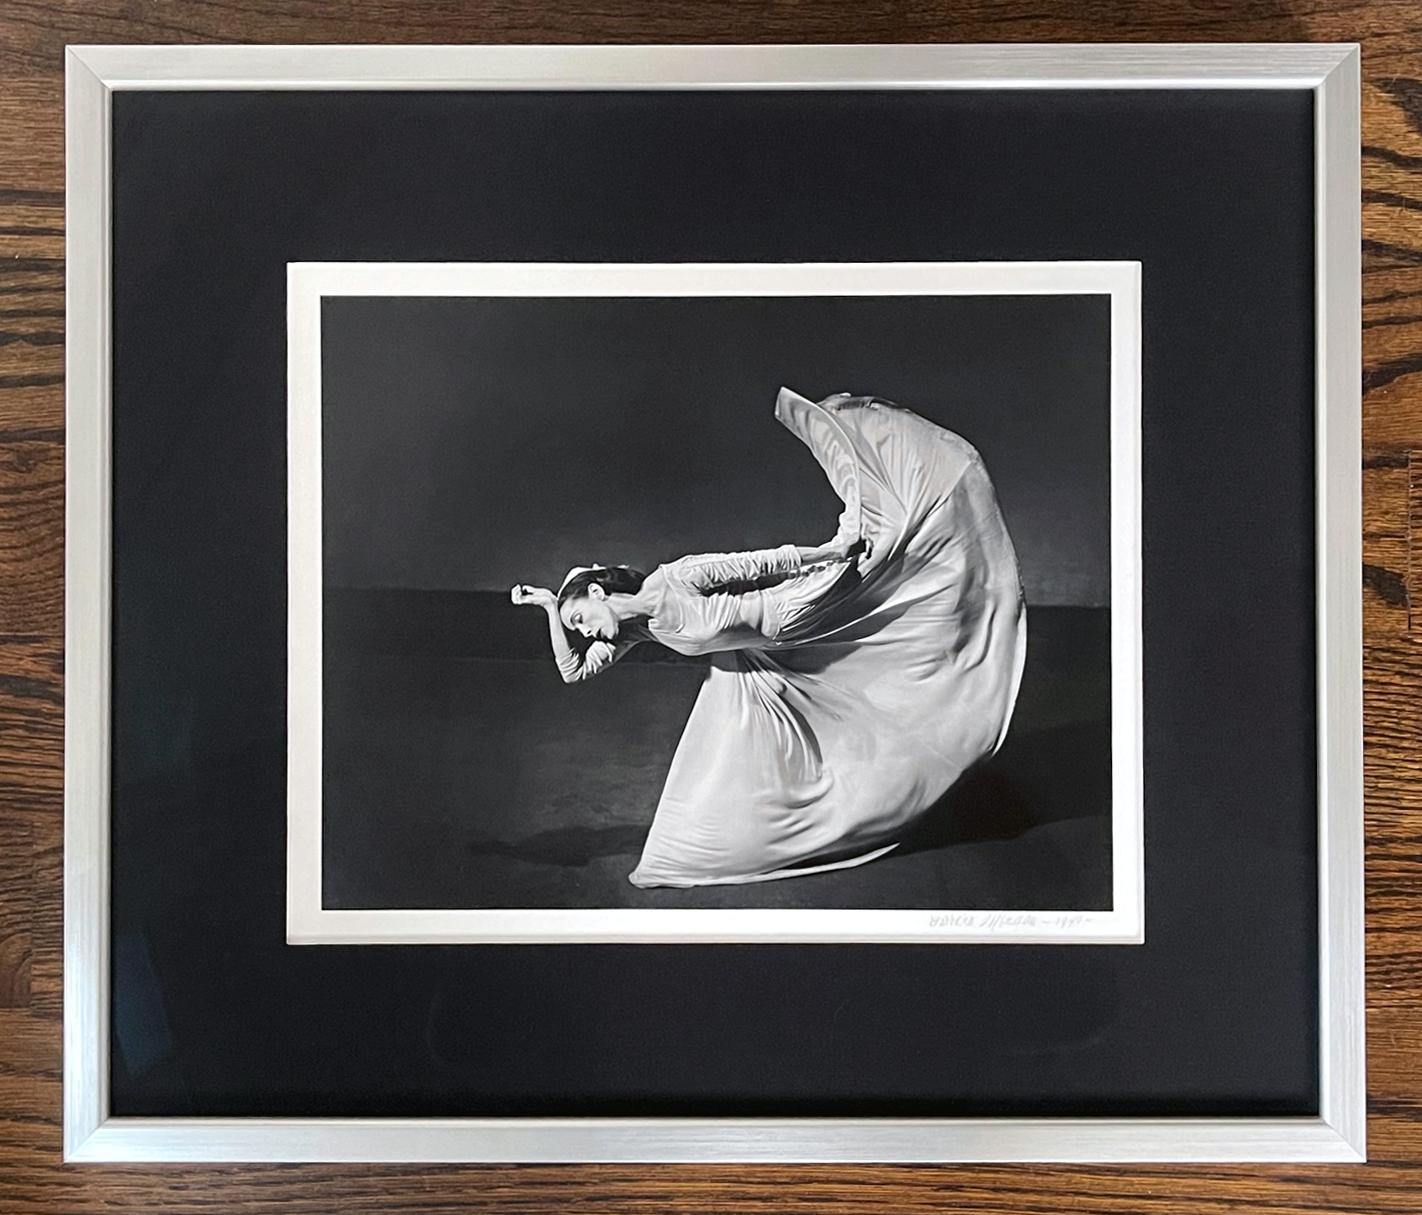 Eine ikonische Schwarz-Weiß-Fotografie von Barbara Morgan (Amerikanerin, 1900-1992) von 